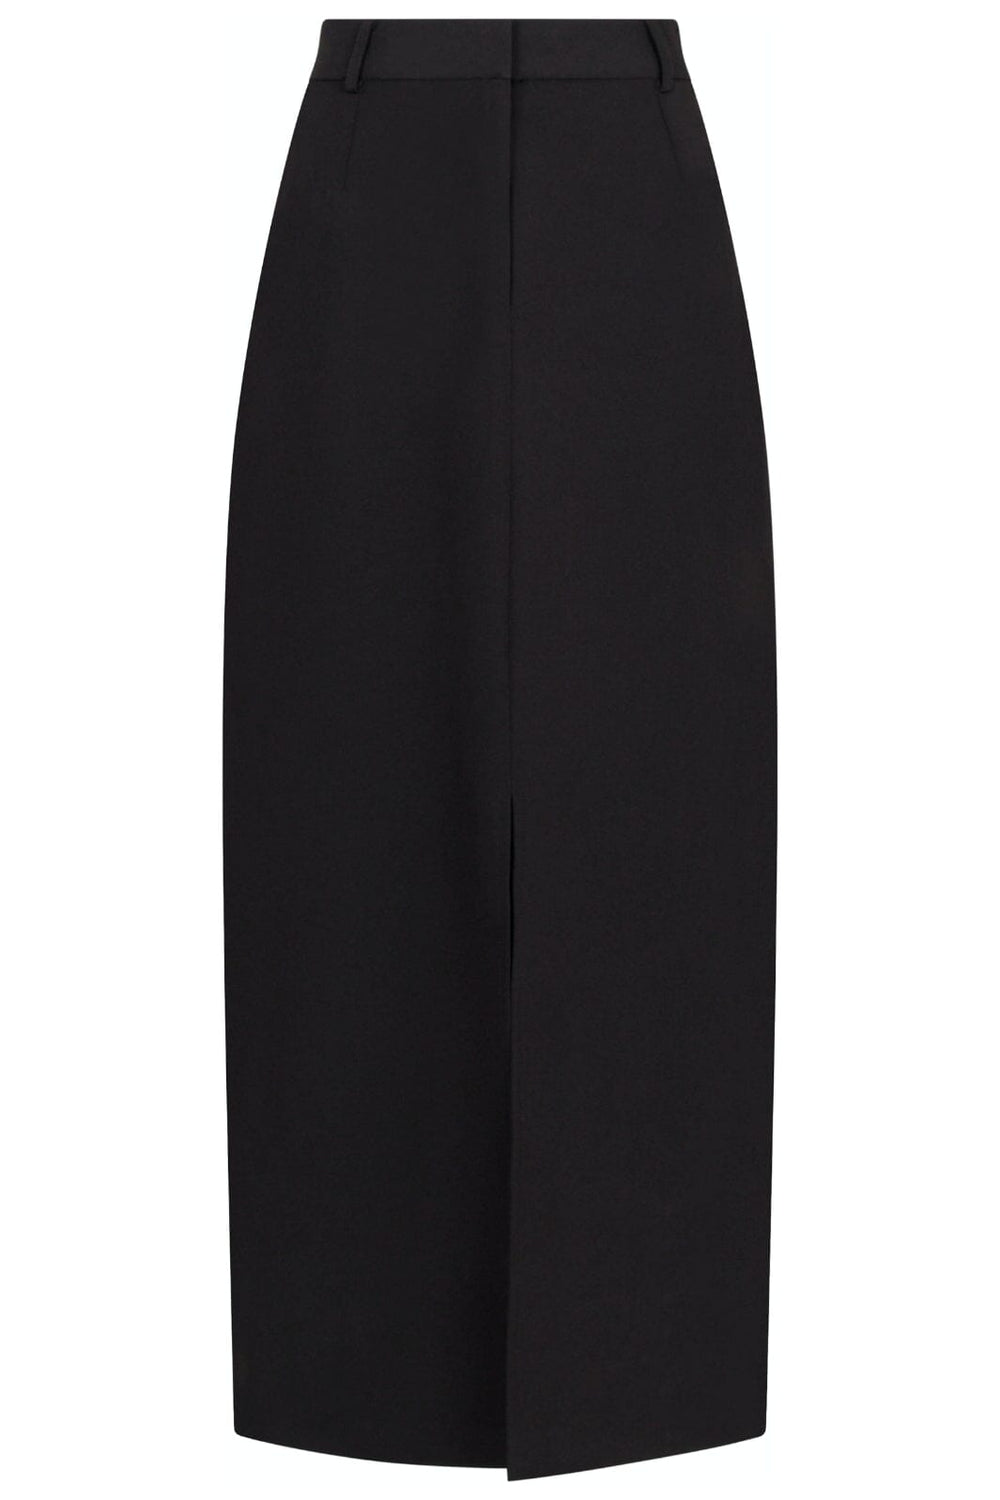 Neo Noir - Leland Suit Skirt - Black Nederdele 